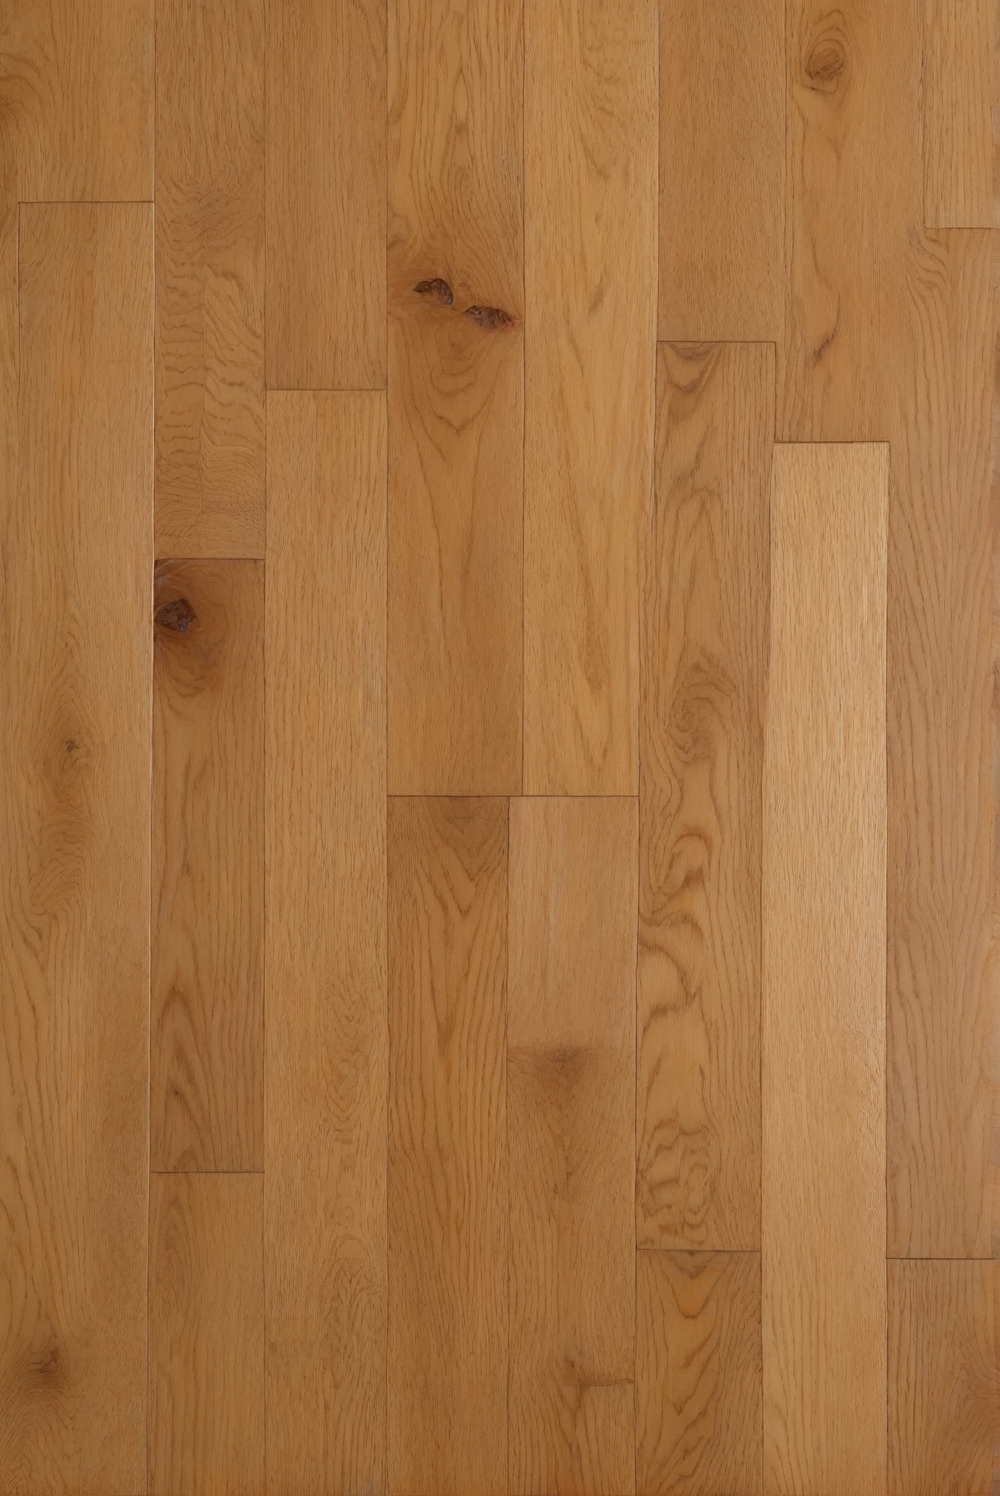 kitchen flooring options, hardwood floor installation, kitchen wood flooring, kitchen floor tiles, laminate kitchen flooring, engineered wood flooring, kitchen vinyl flooring